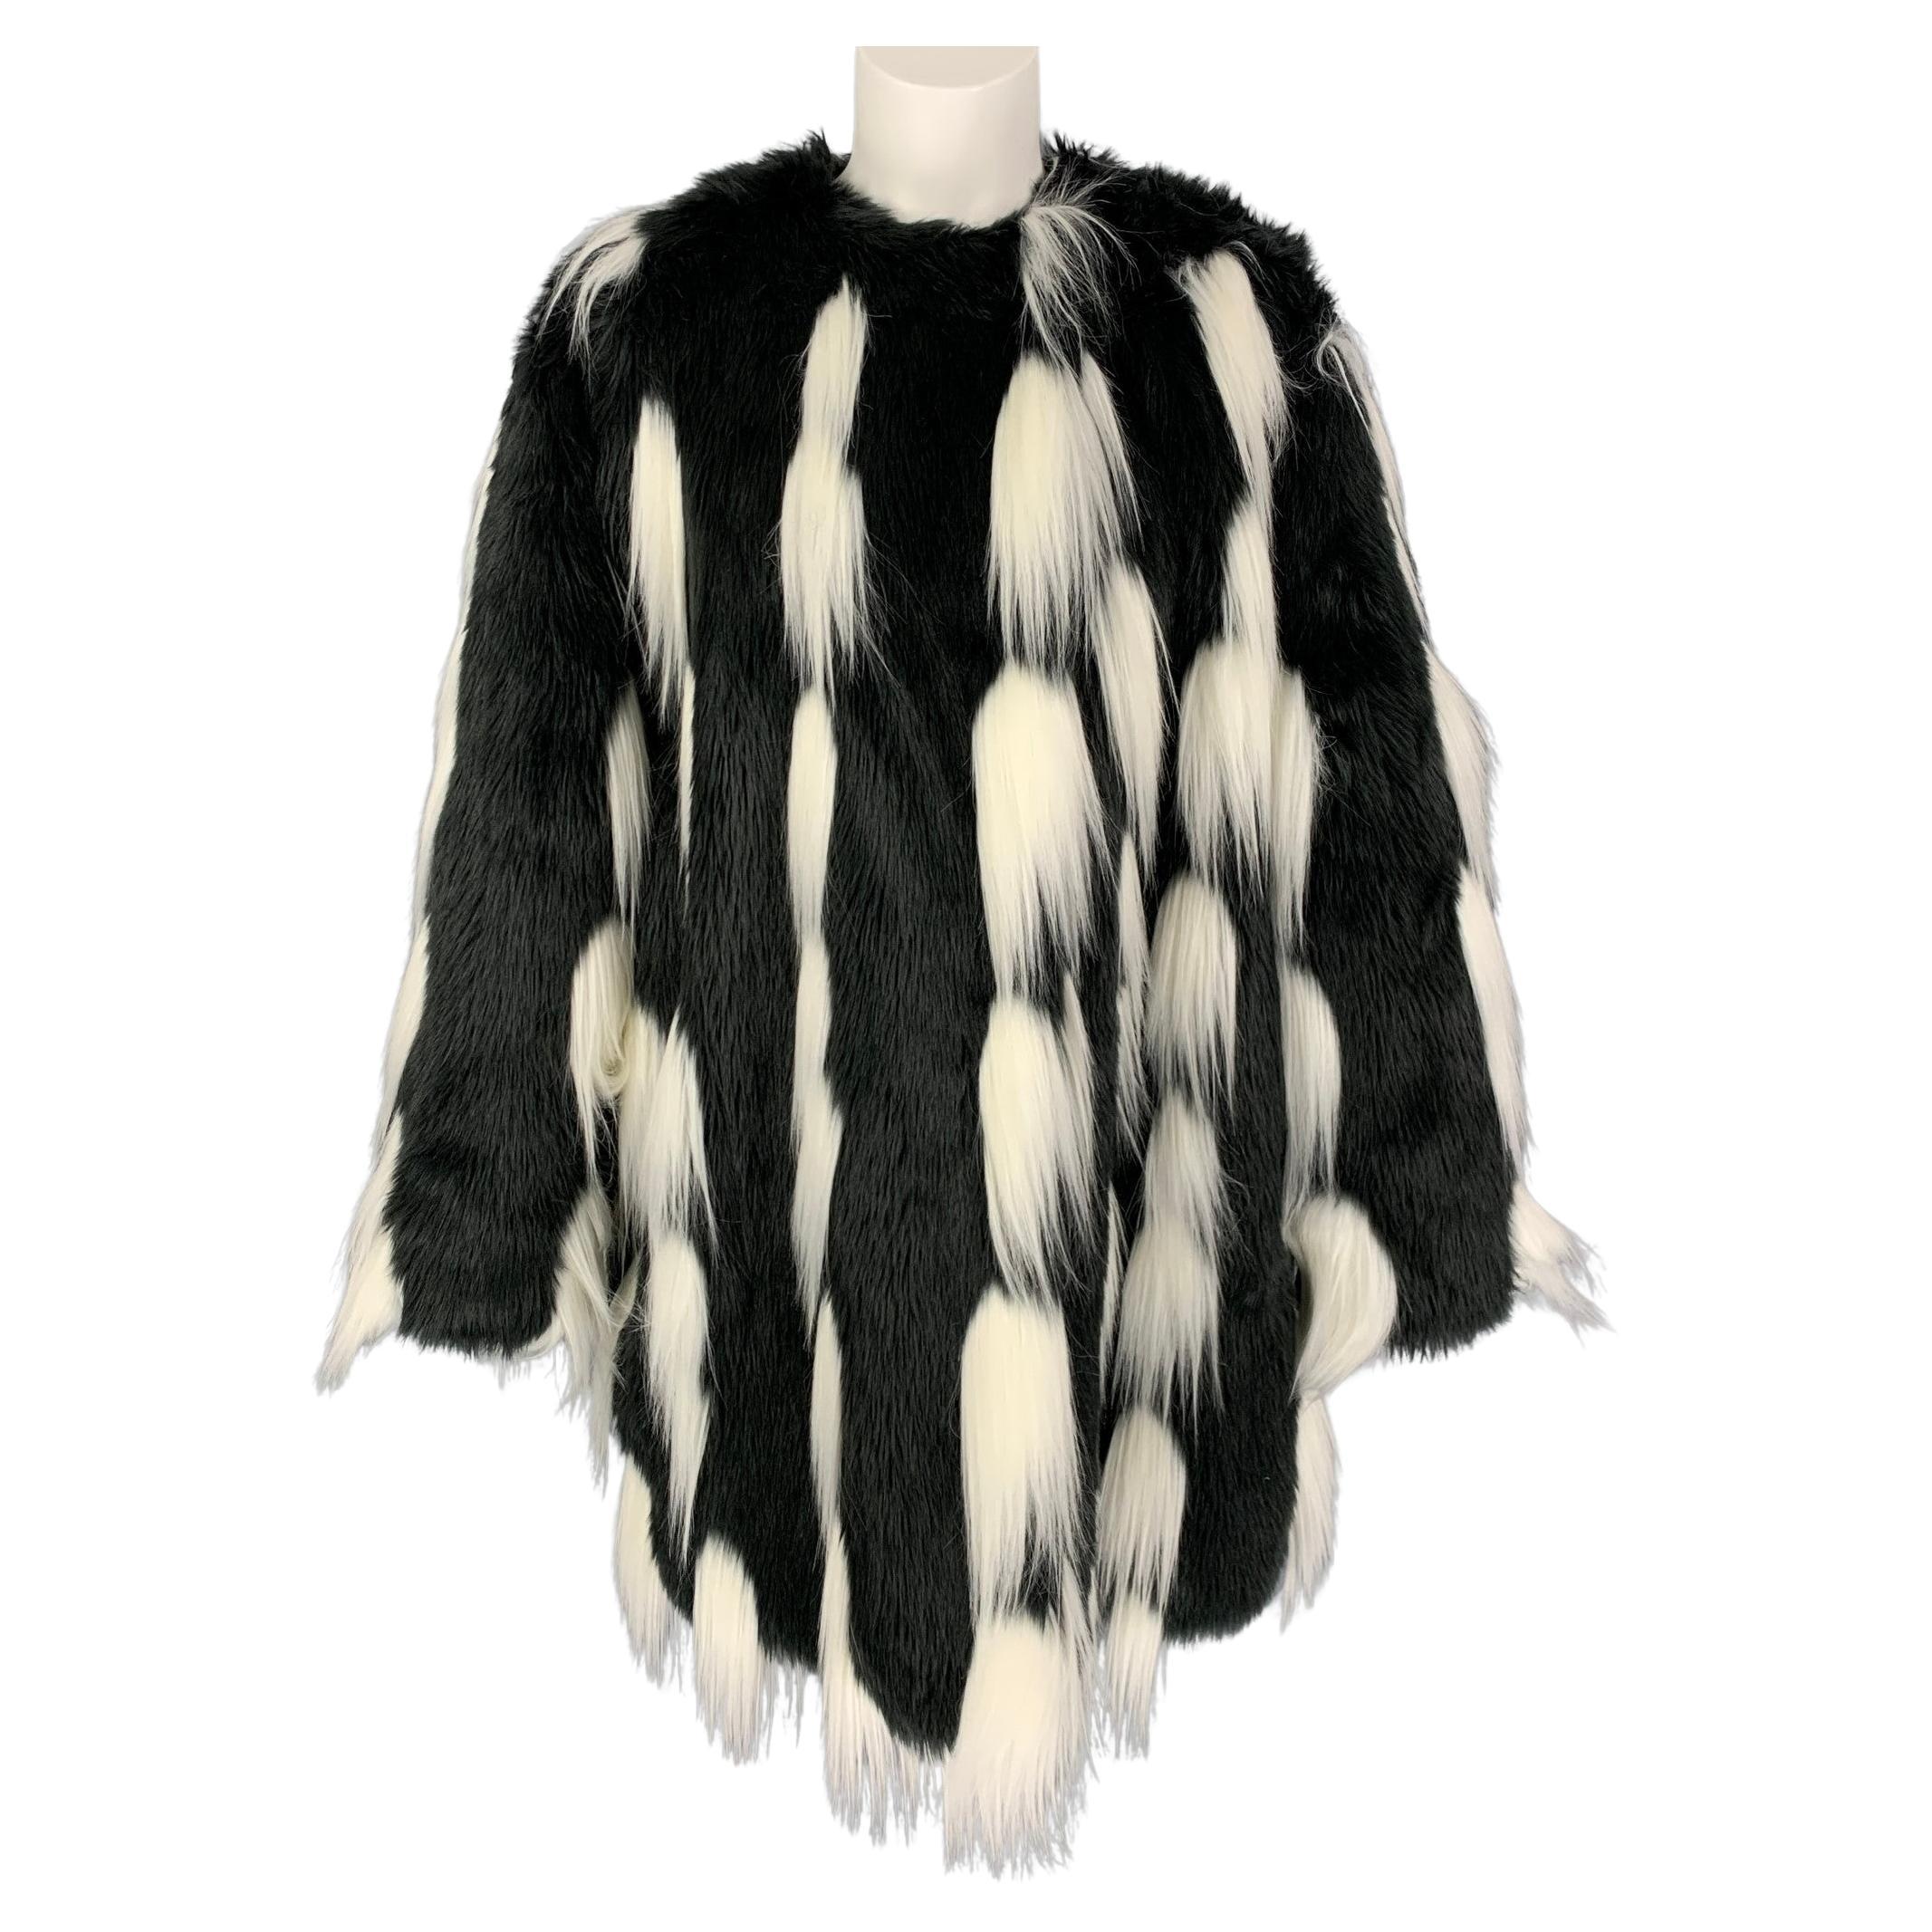 GIVENCHY AW 18 Size S/M Black White Faux Fur Modacrylic Oversized Coat